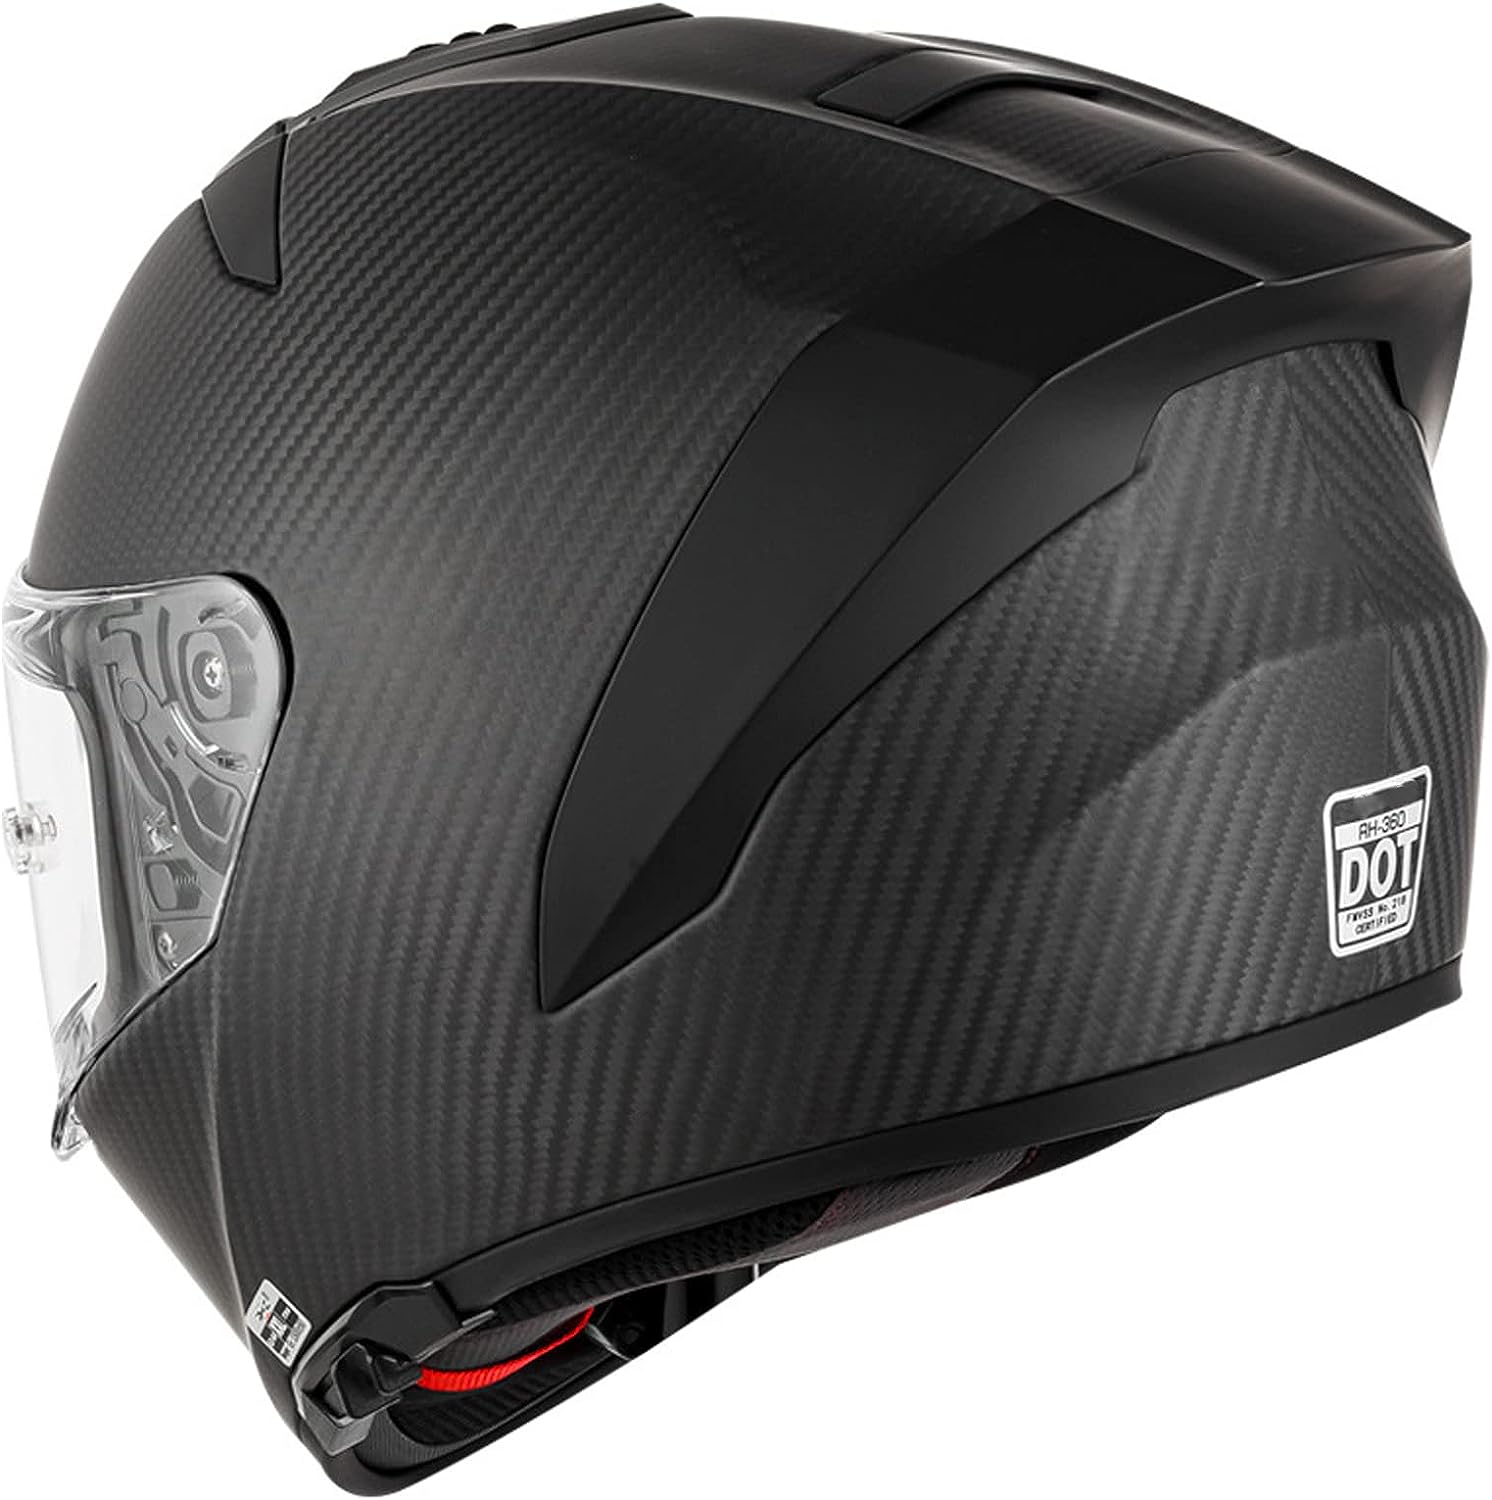 morfine Afwijken Zorgvuldig lezen K3 Carbon Fiber Helmet - Bluetooth Headset